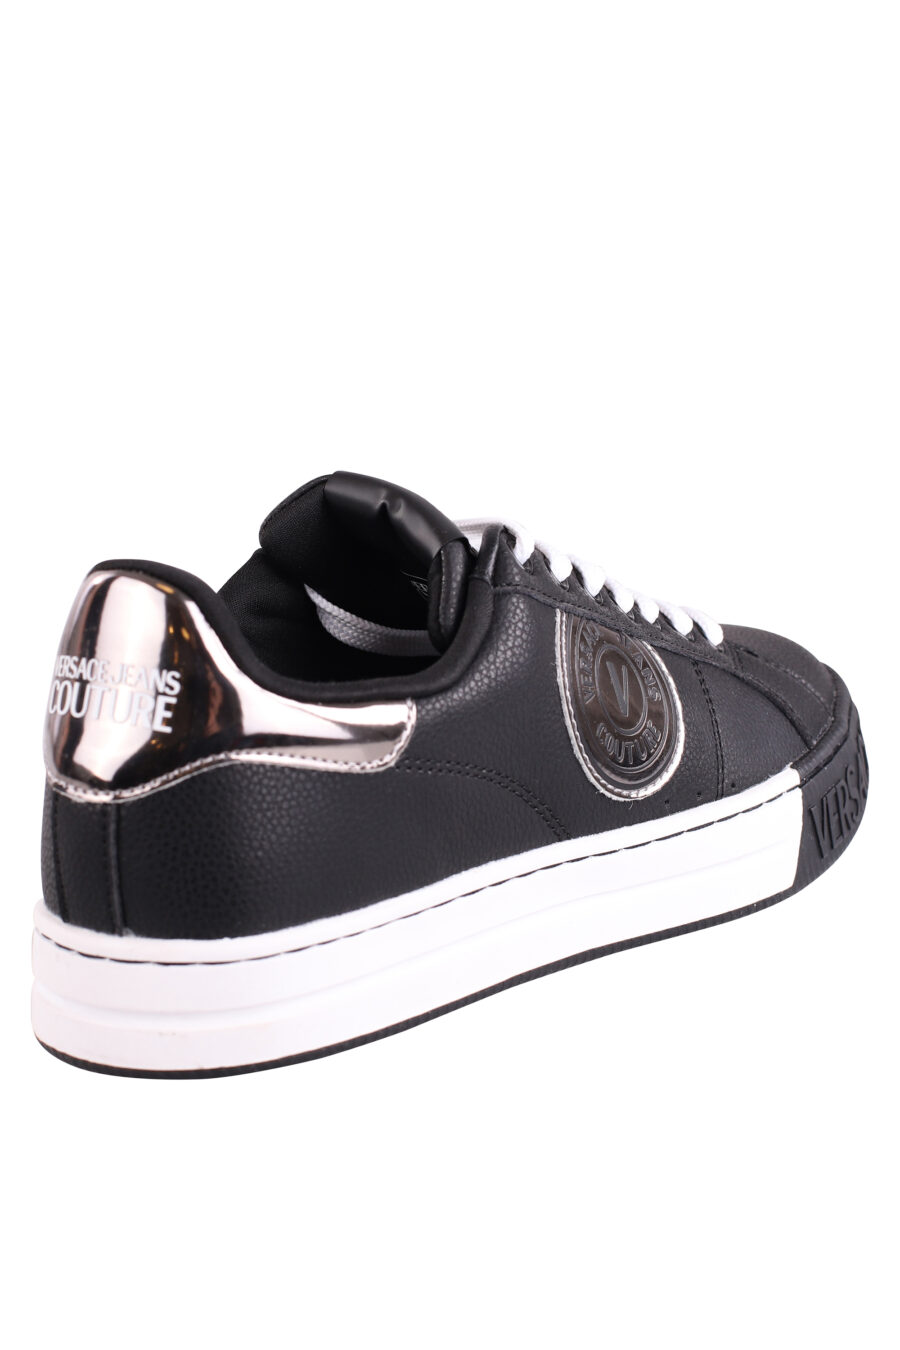 Zapatillas negras y plateadas con logo en semicirculo - IMG 9043